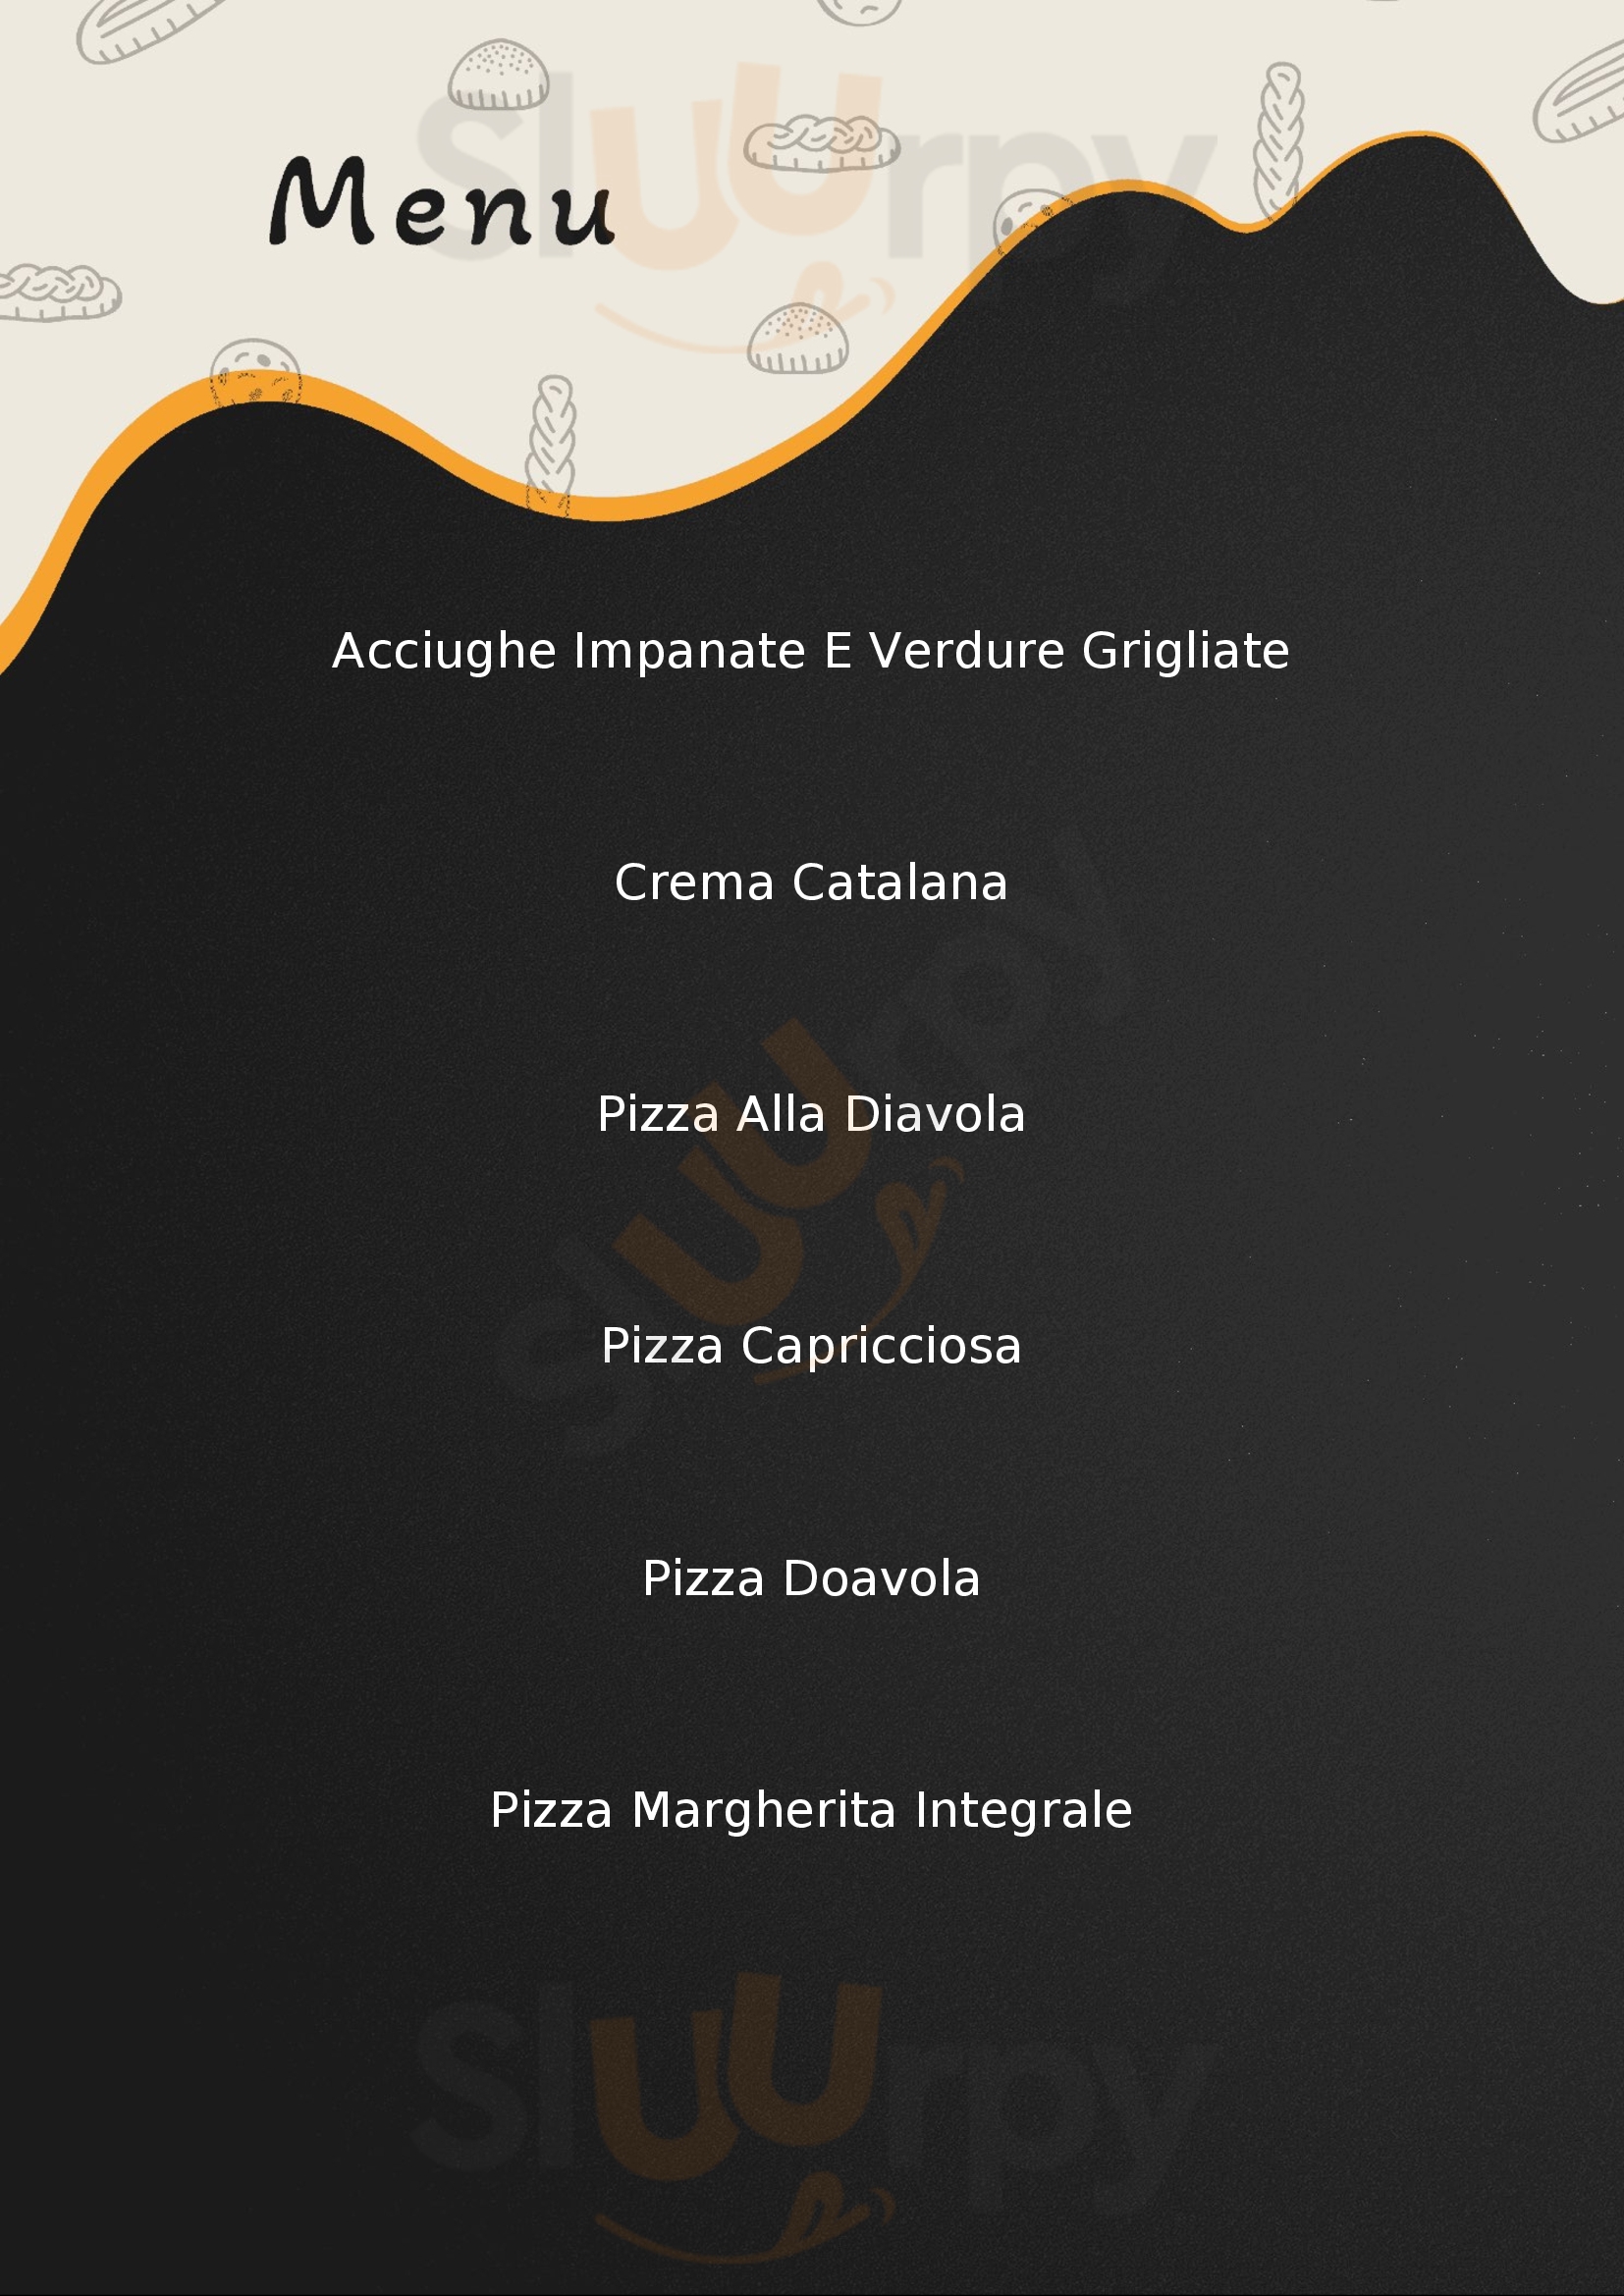 Martini Pizza e Cucina Acqui Terme menù 1 pagina